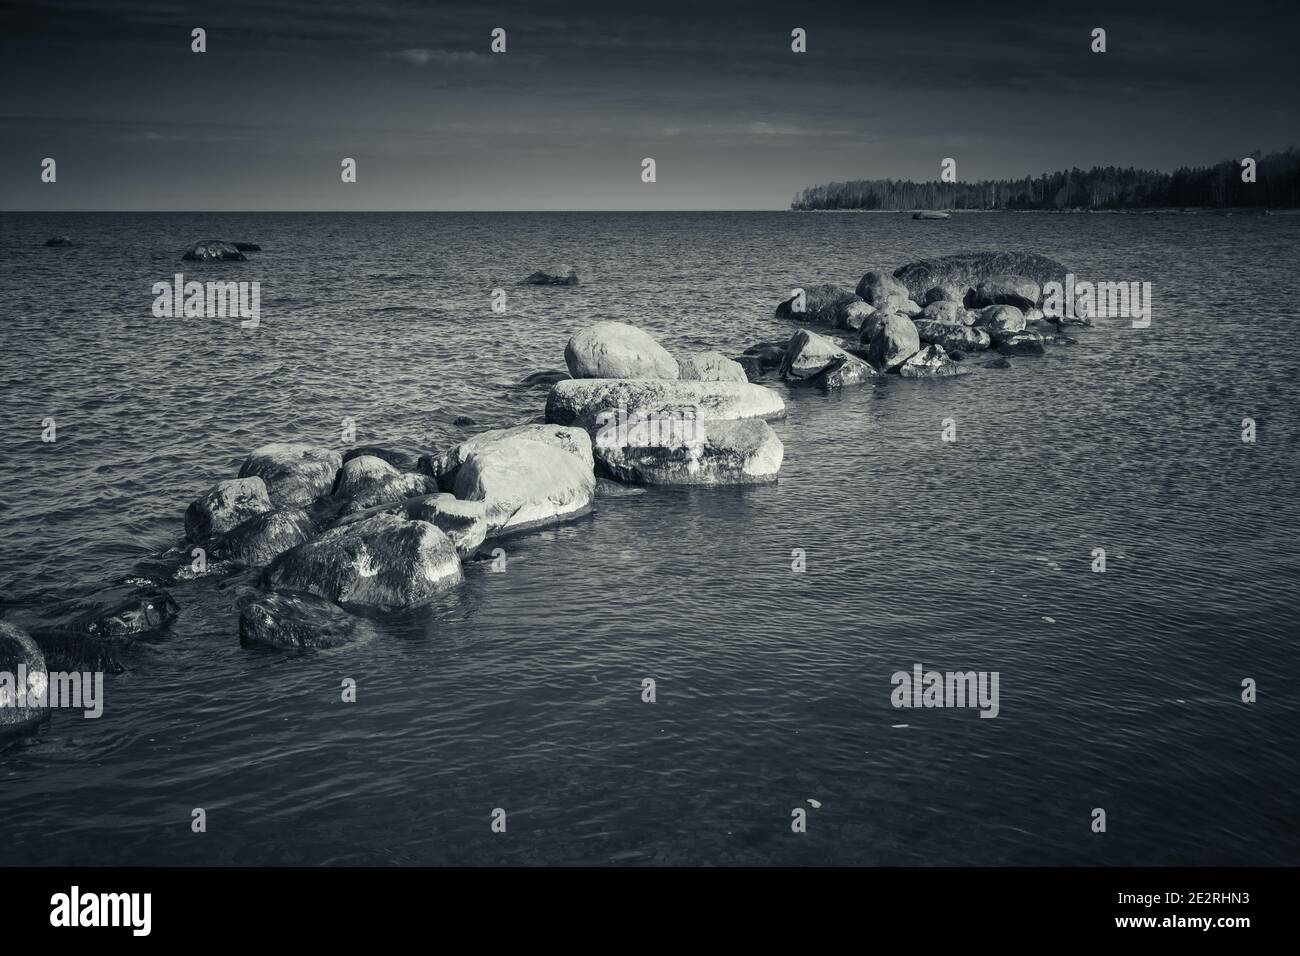 Steine liegen in einer Reihe auf einem Meeresboden in seichtem Wasser, Ostsee Küstenlandschaft, blau getönte monochrome Foto Stockfoto